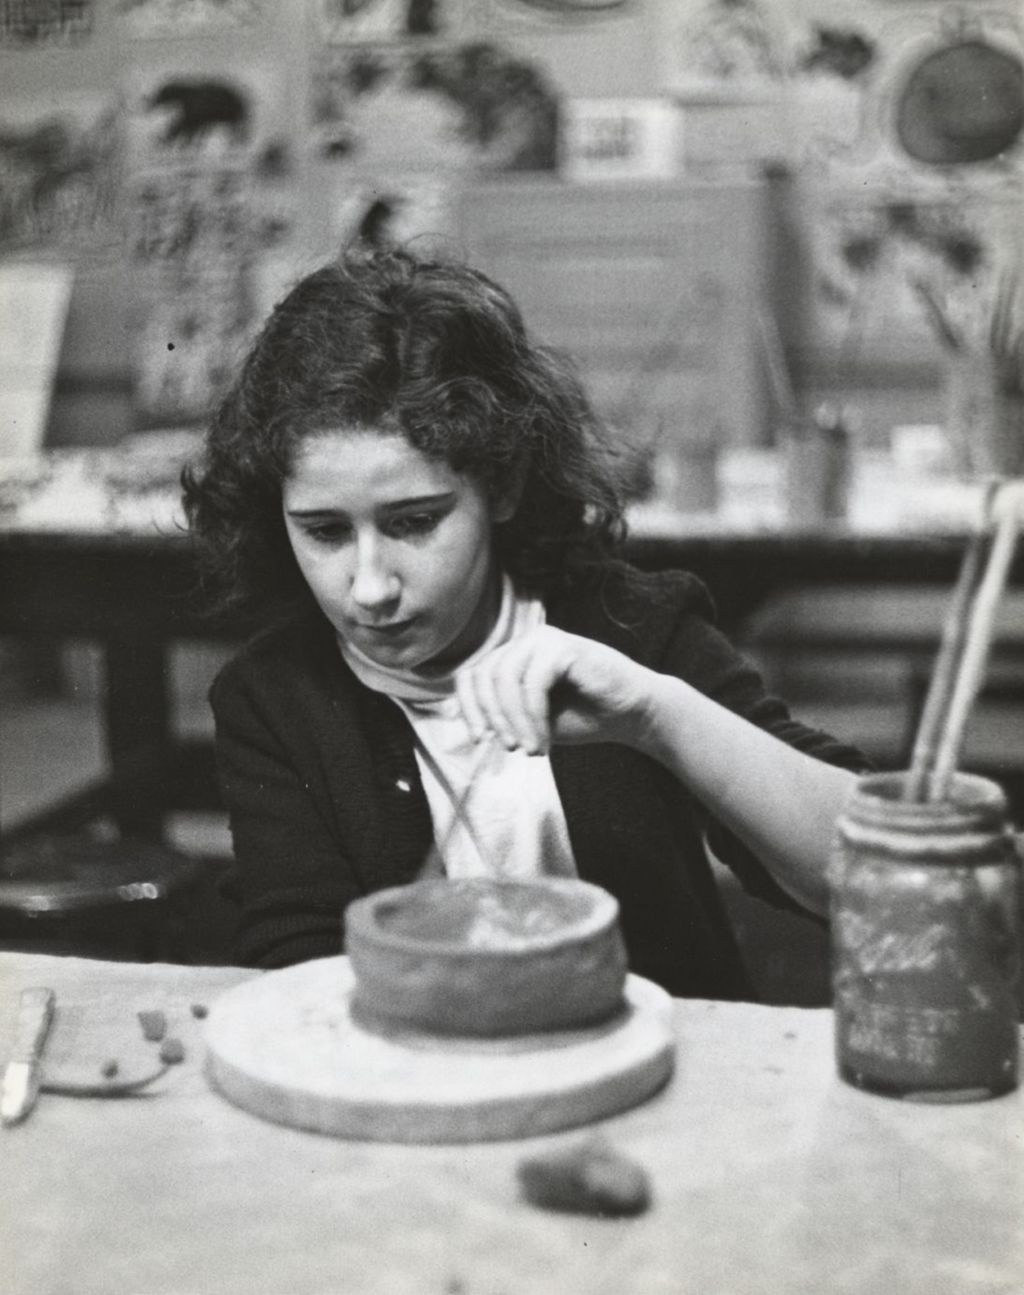 Girl in ceramics class